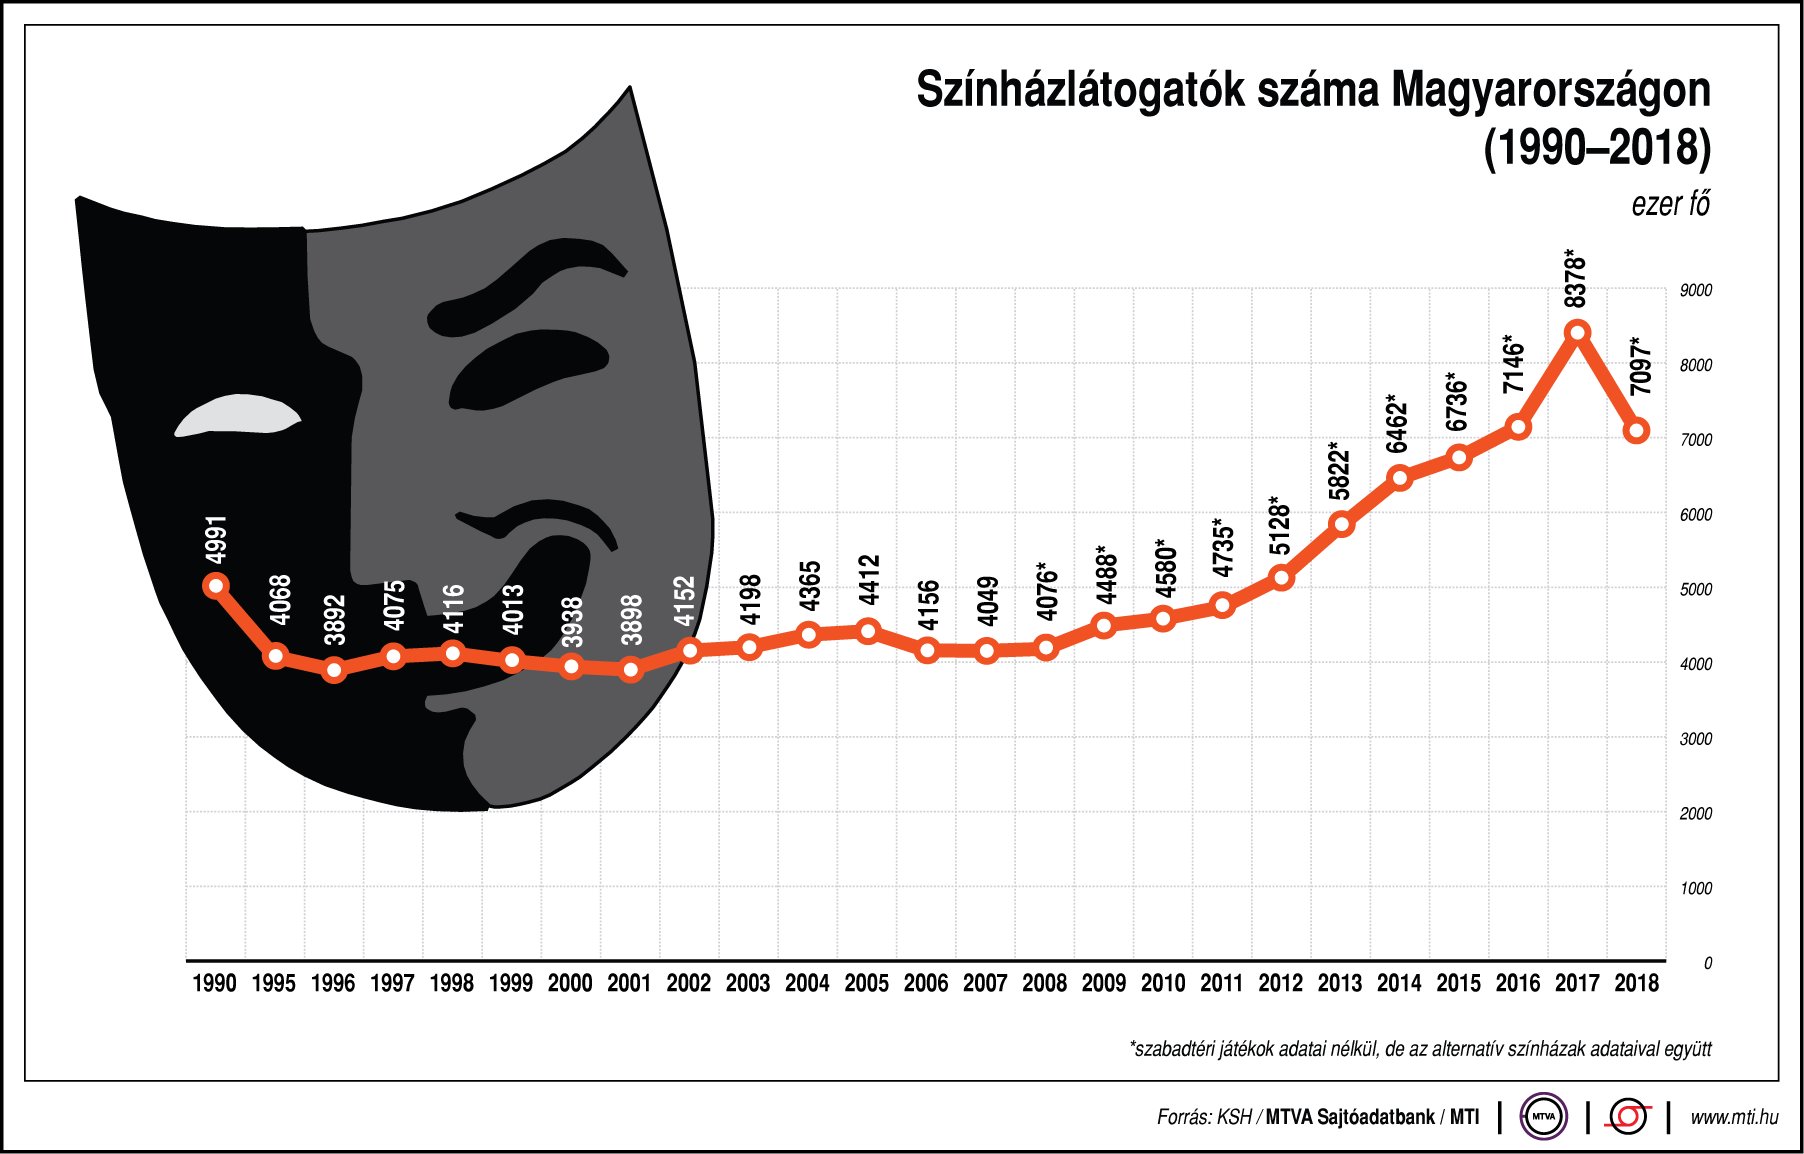 Színházlátogatók száma Magyarországon